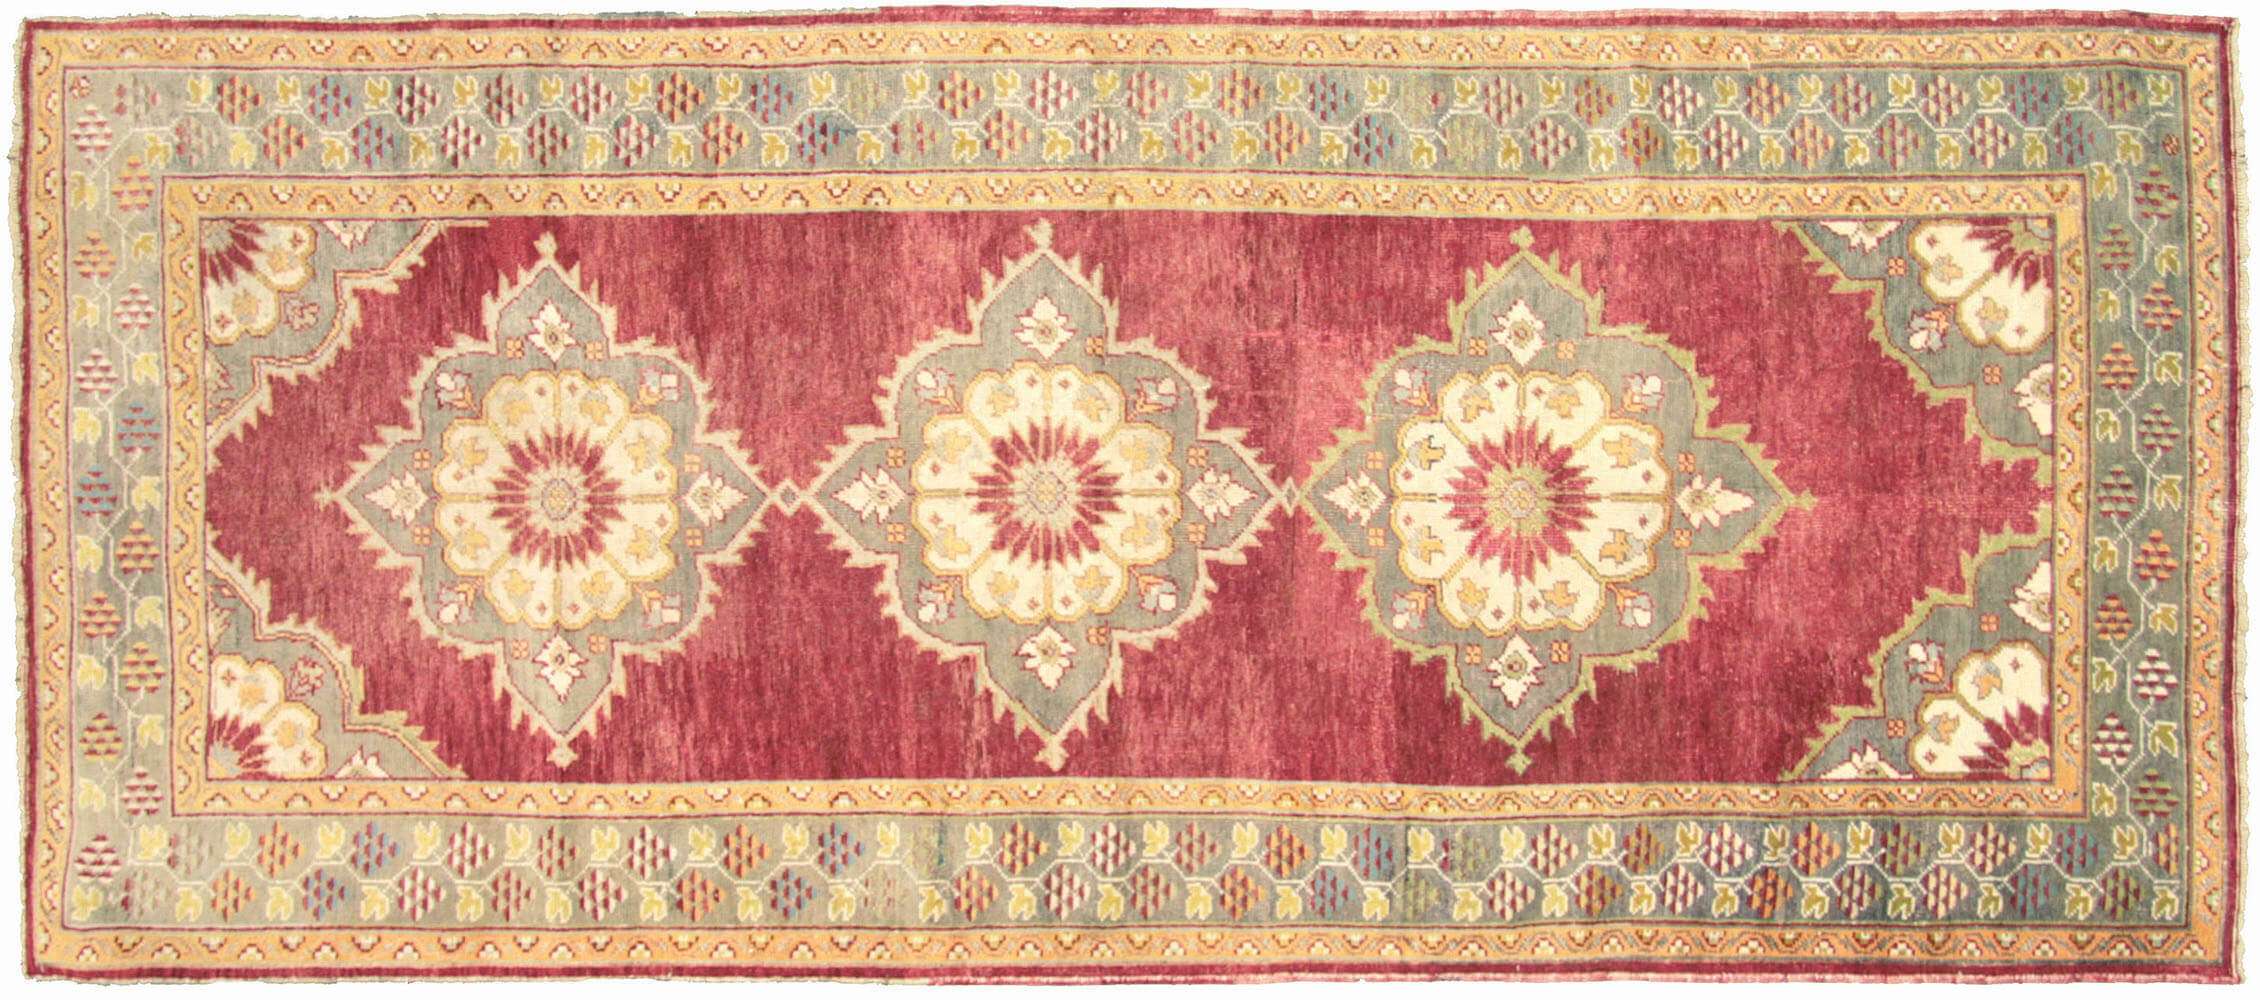 Vintage Turkish Oushak Carpet - 4'6" x 11'